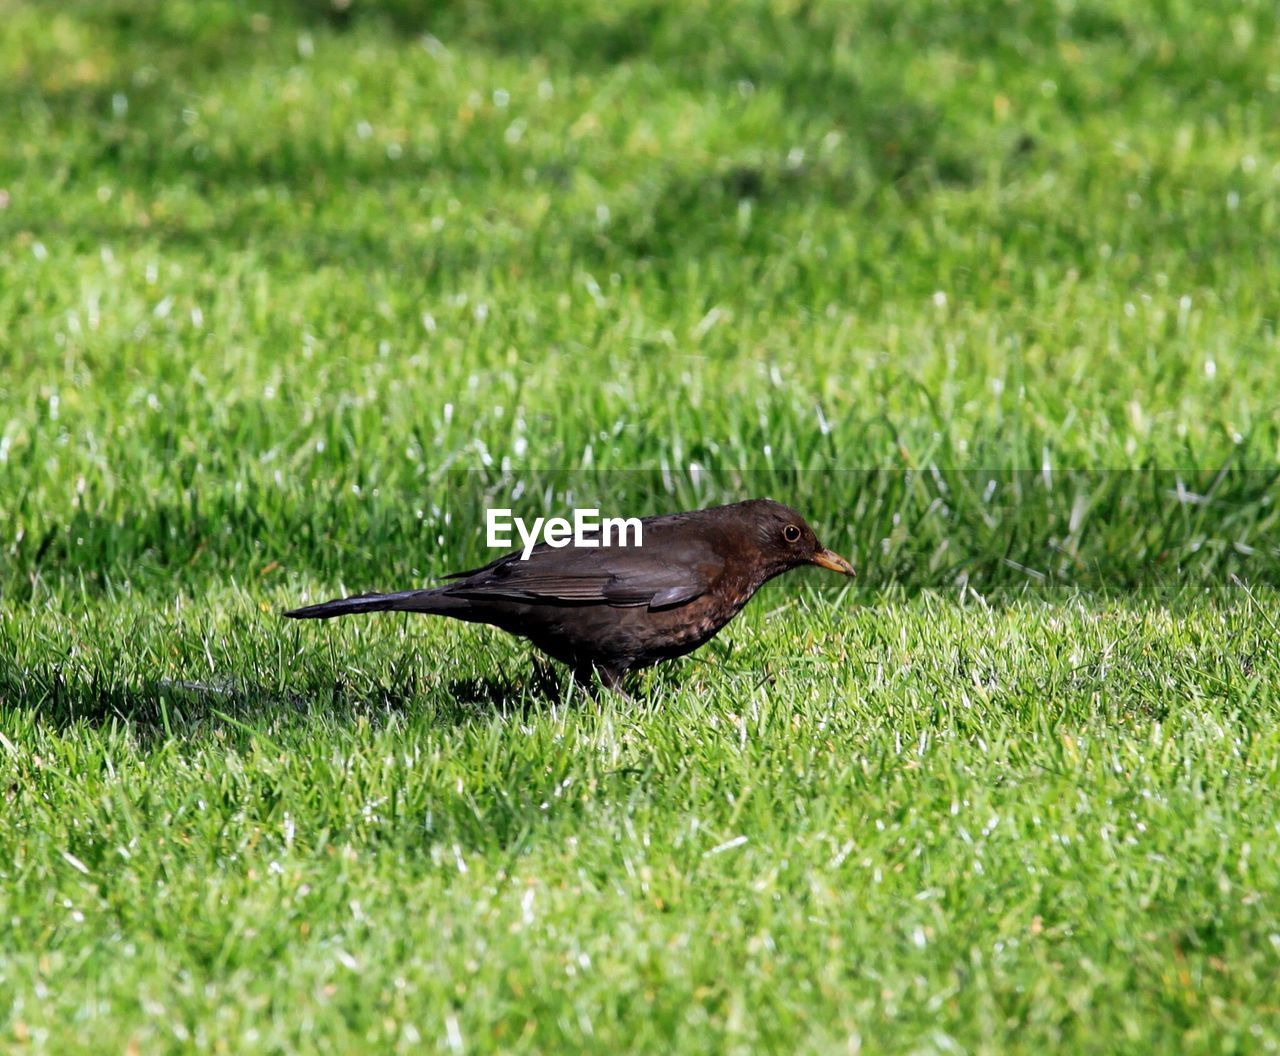 View of bird on grassy field